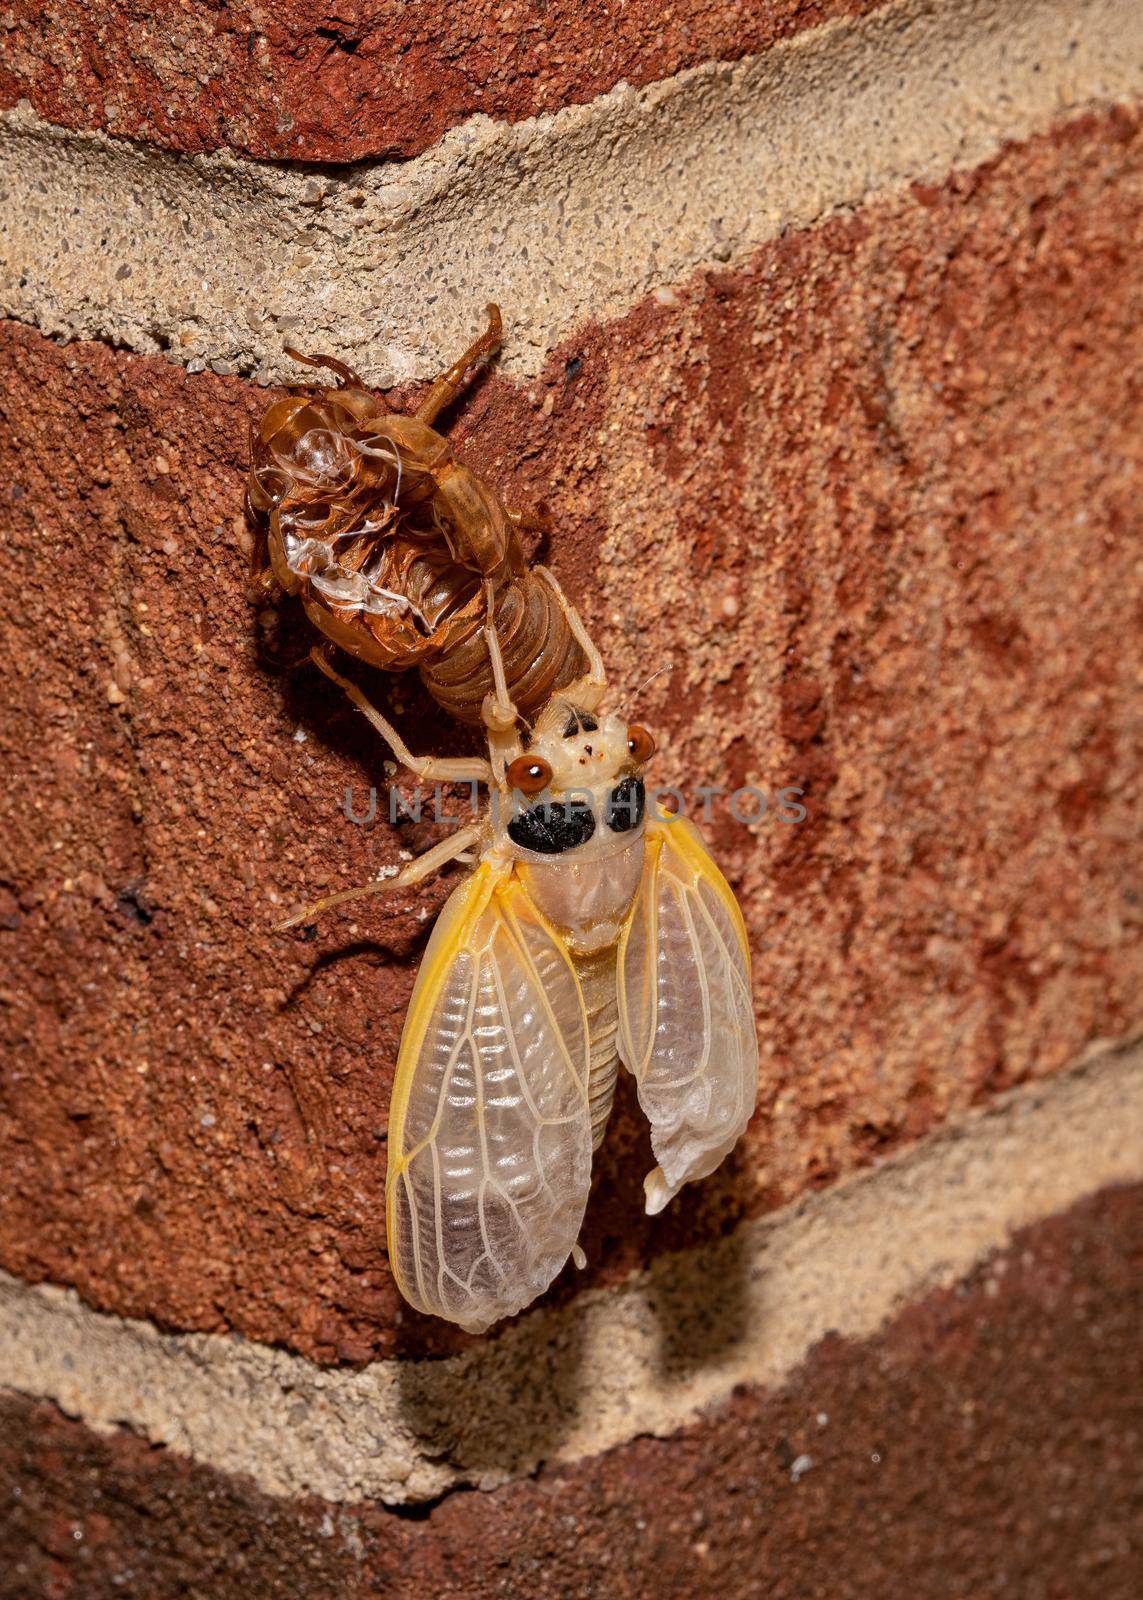 Molting Brood X Cicada V by CharlieFloyd